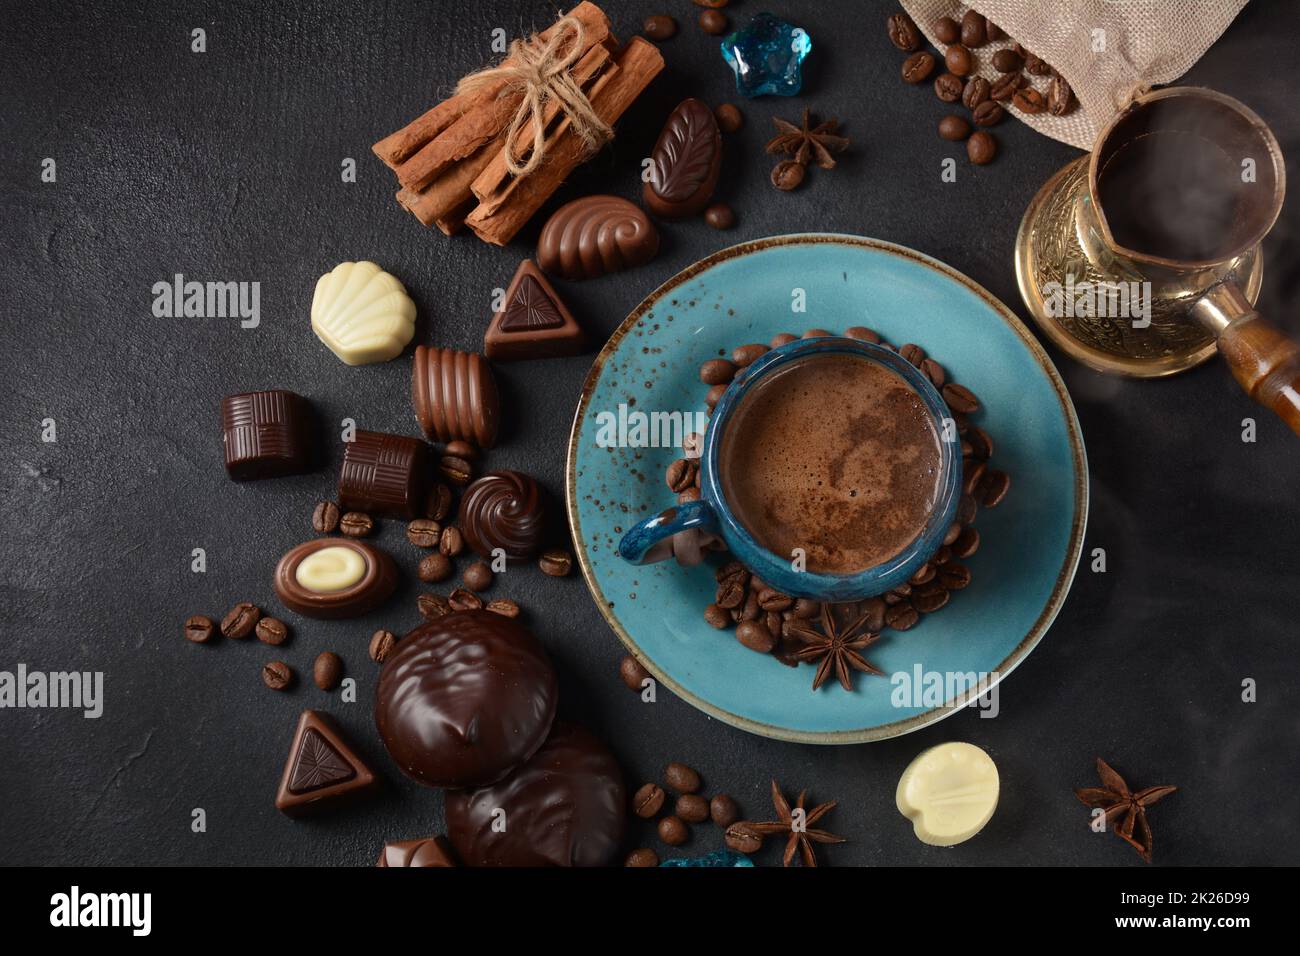 Tazza di caffè, fagioli, cioccolato su vecchio tavolo da cucina assortimento di dolci al cioccolato fondente, bianco e latte, zefiro (zephyr). Spezie, cannella. Foto Stock